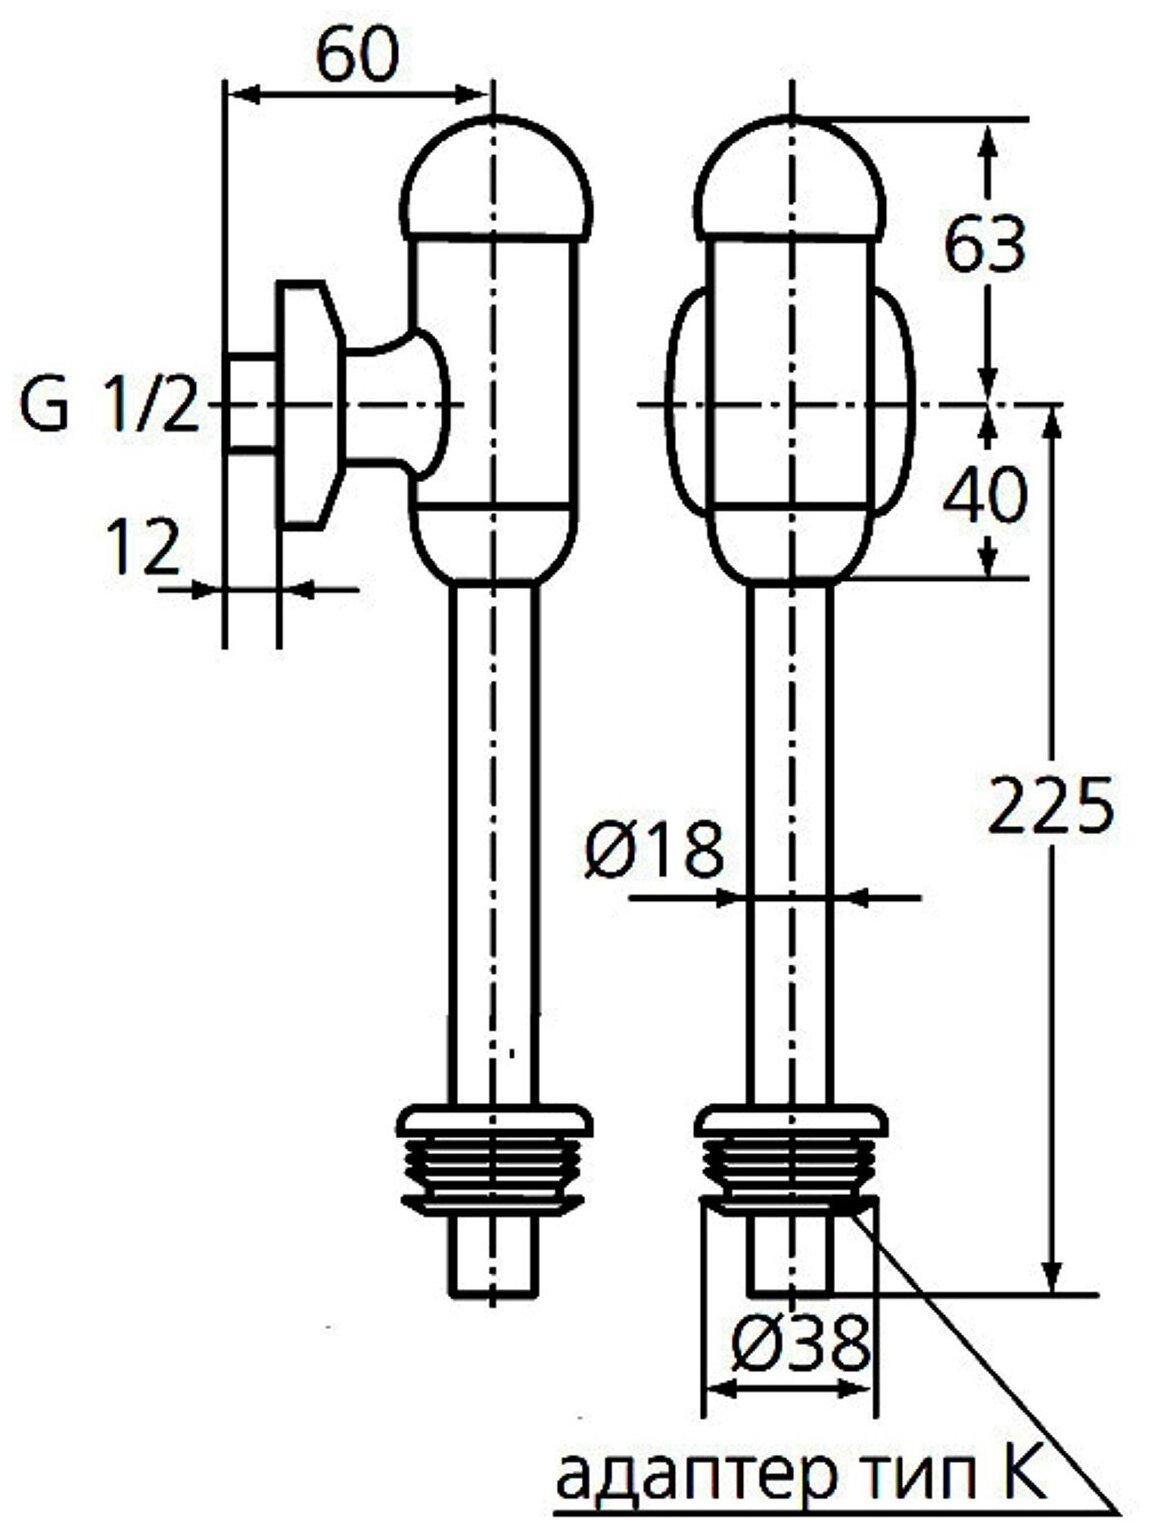 B7120AA Смывной механизм для писсуара 1/2" (верхняя подводка, хром) Ideal Standard - фото №2